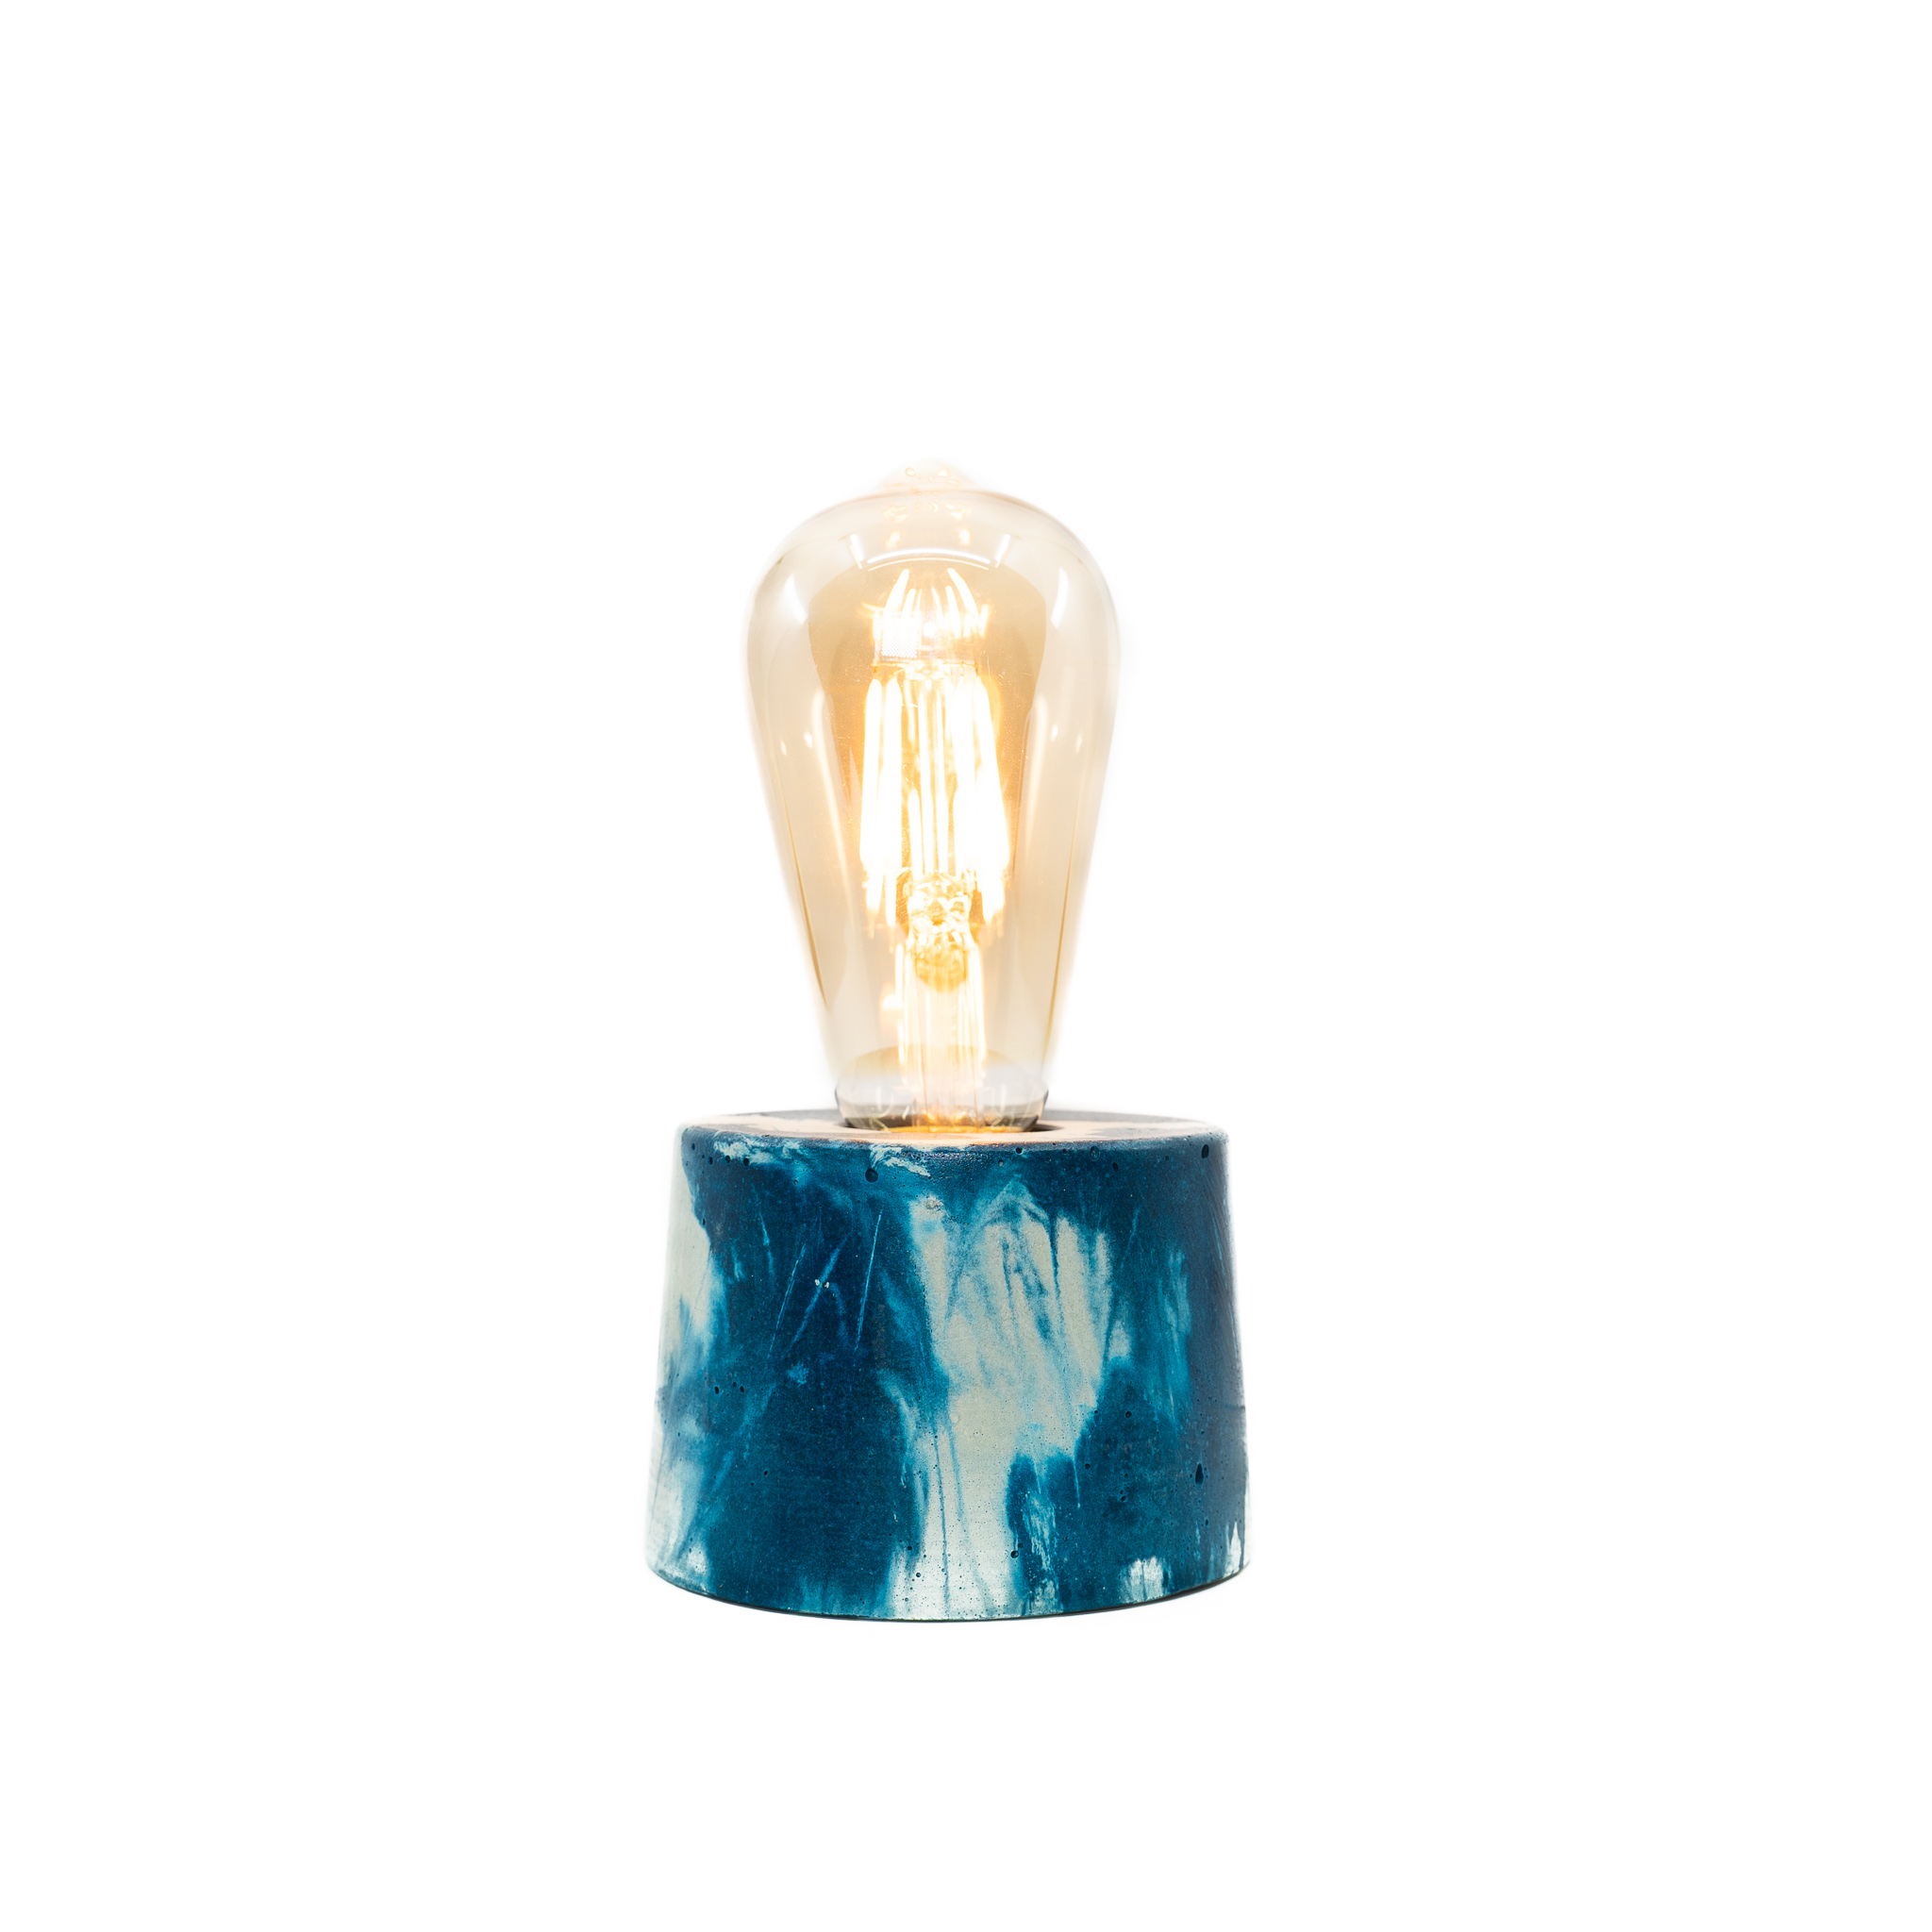 Lampe cylindre marbré en béton bleu pétrole fabrication artisanale